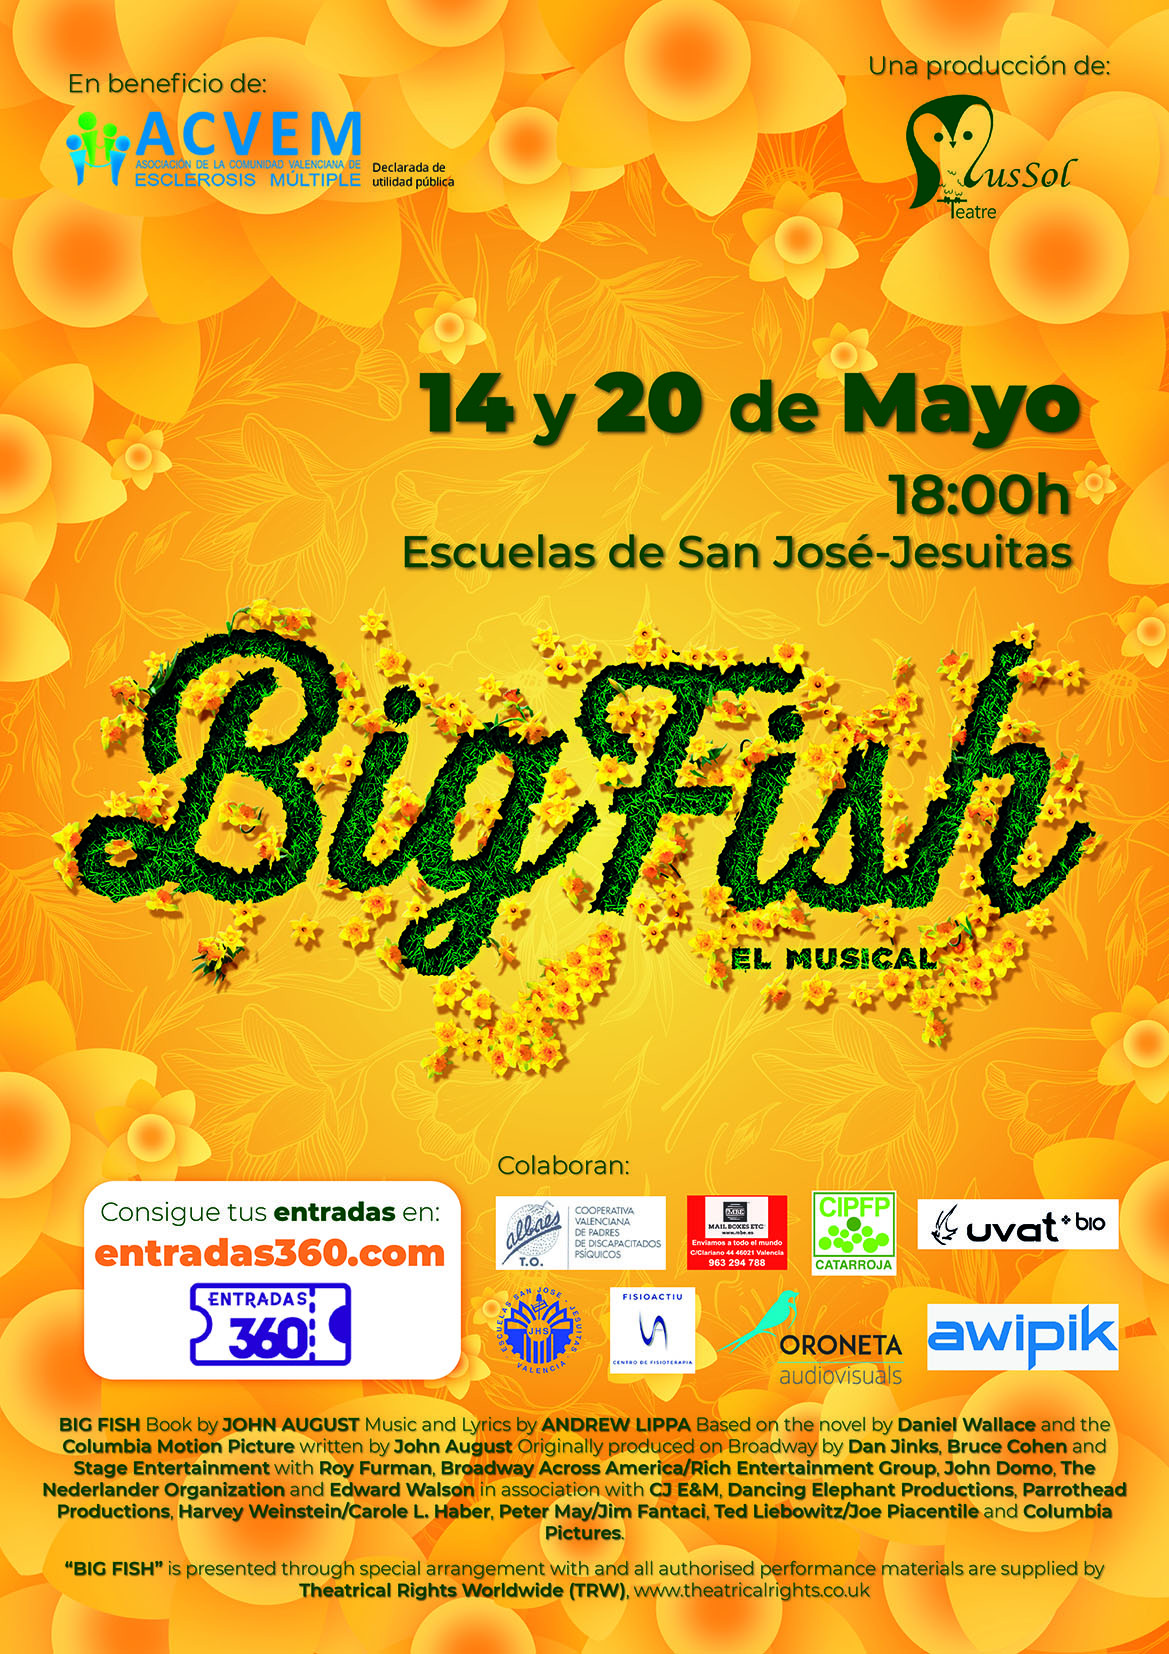 MusSol Teatre presenta el musical “Big Fish” en   beneficio de la Esclerosis Múltiple